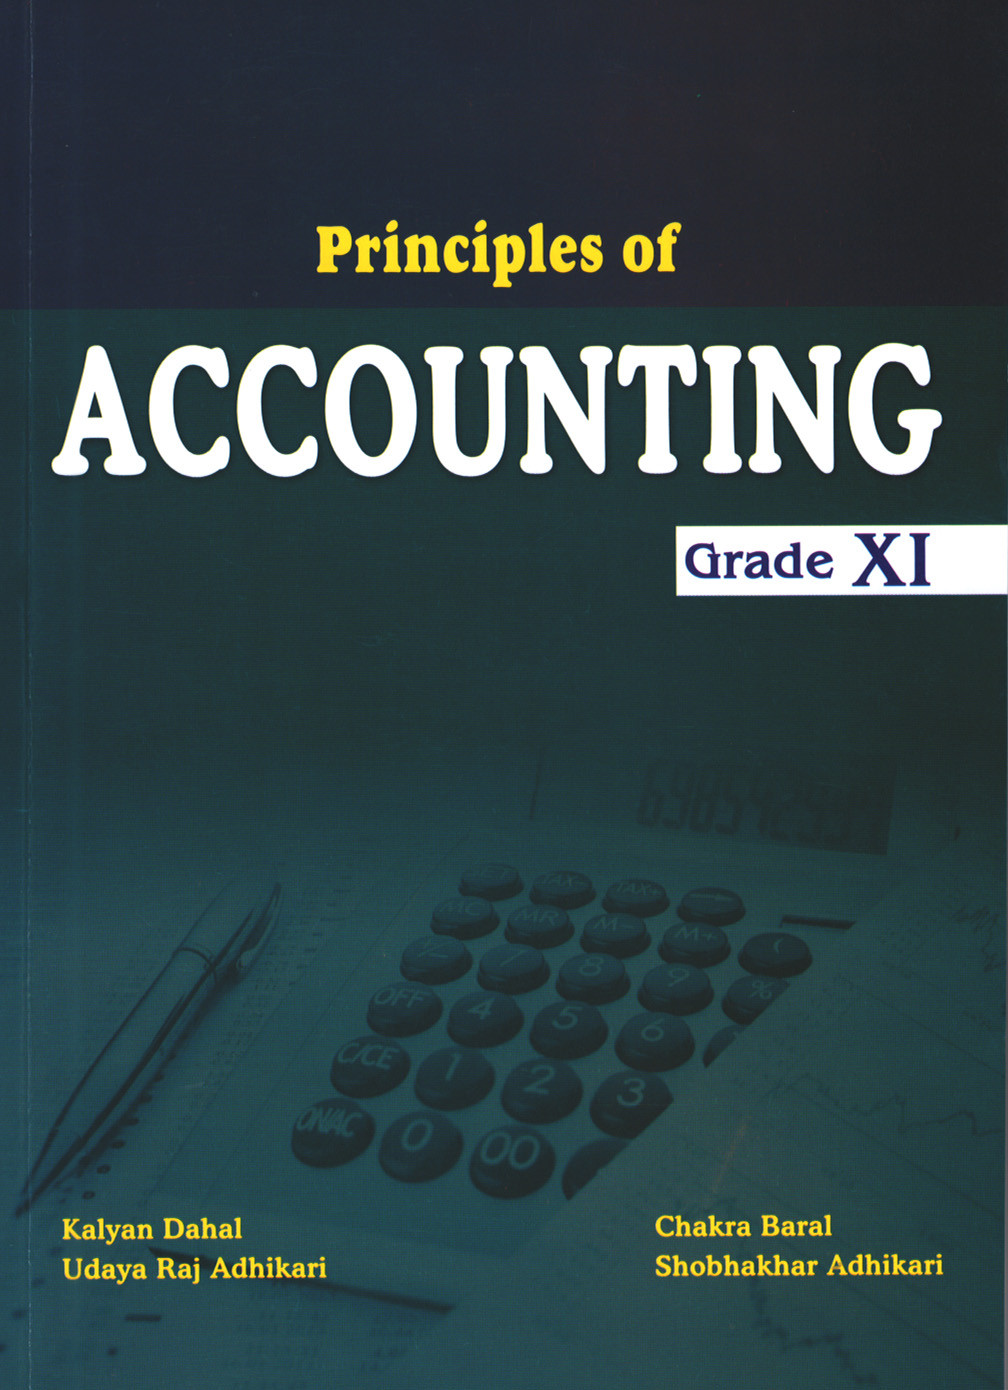 Principles of Accounting - 11